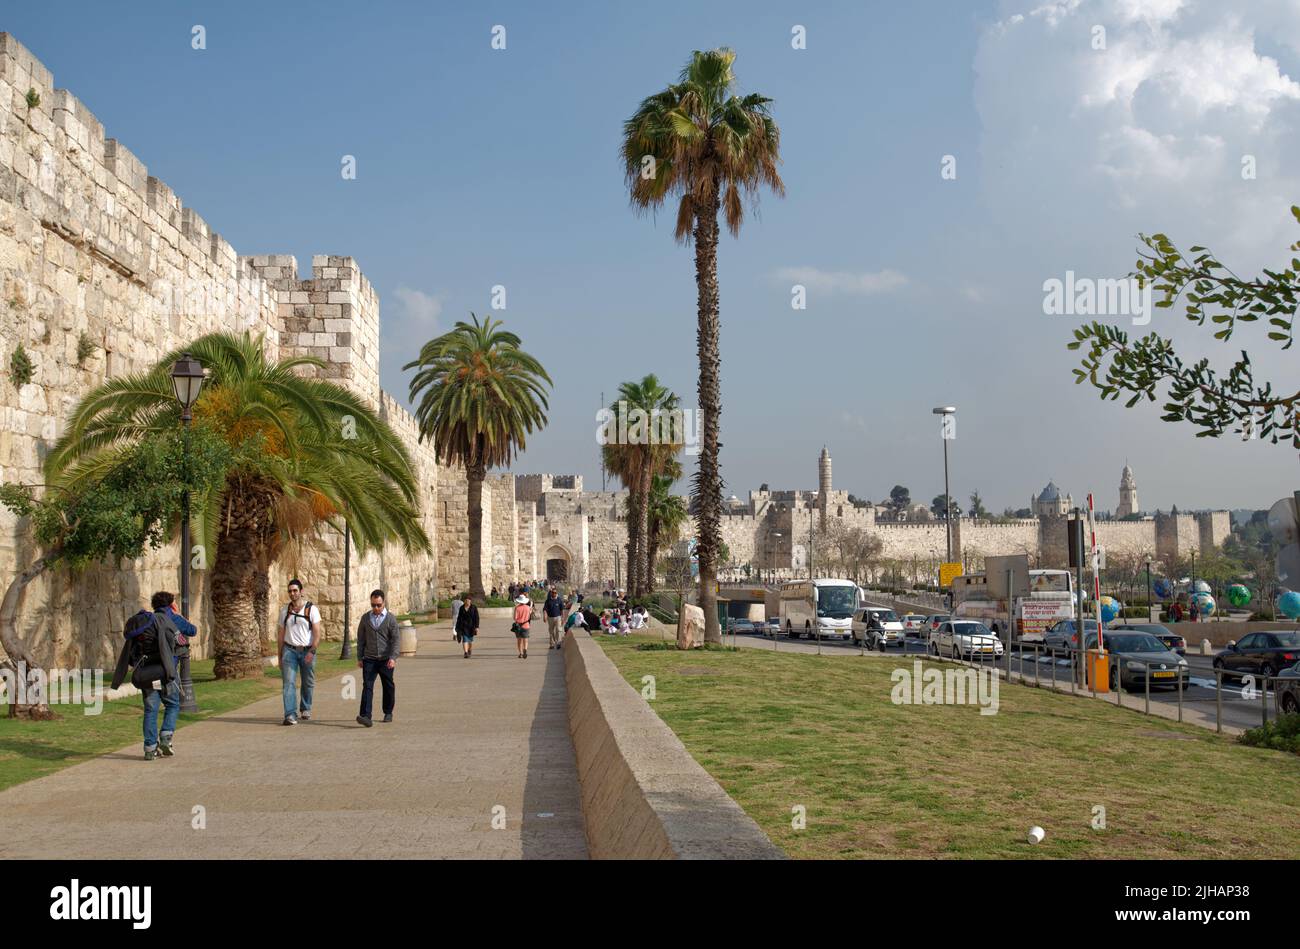 Popolo alle mura della Città Vecchia di Gerusalemme, Israele. La città vecchia è dichiarata patrimonio dell'umanità dall'UNESCO Foto Stock